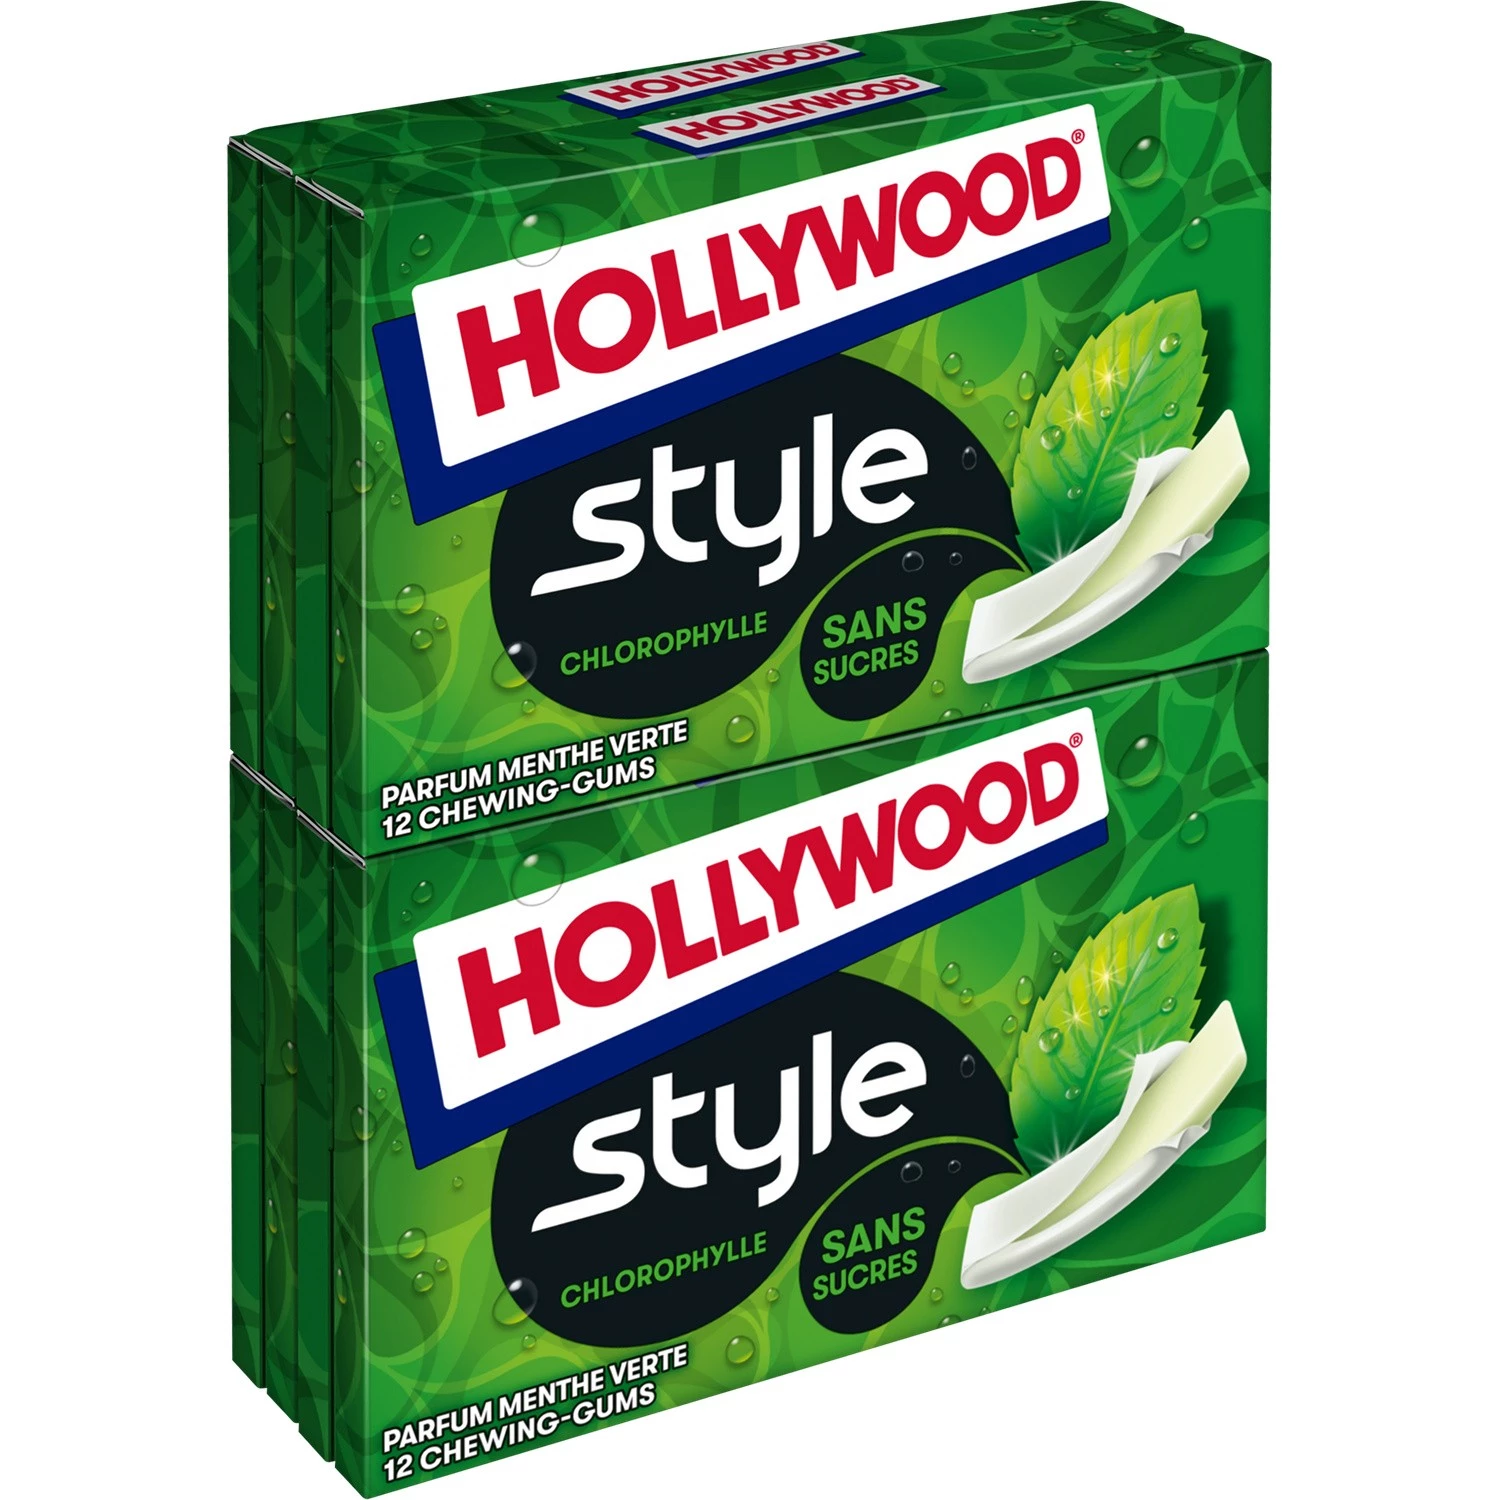 Sugar-Free Chlorophyll Chewing Gum; 27g - HOLLYWOOD